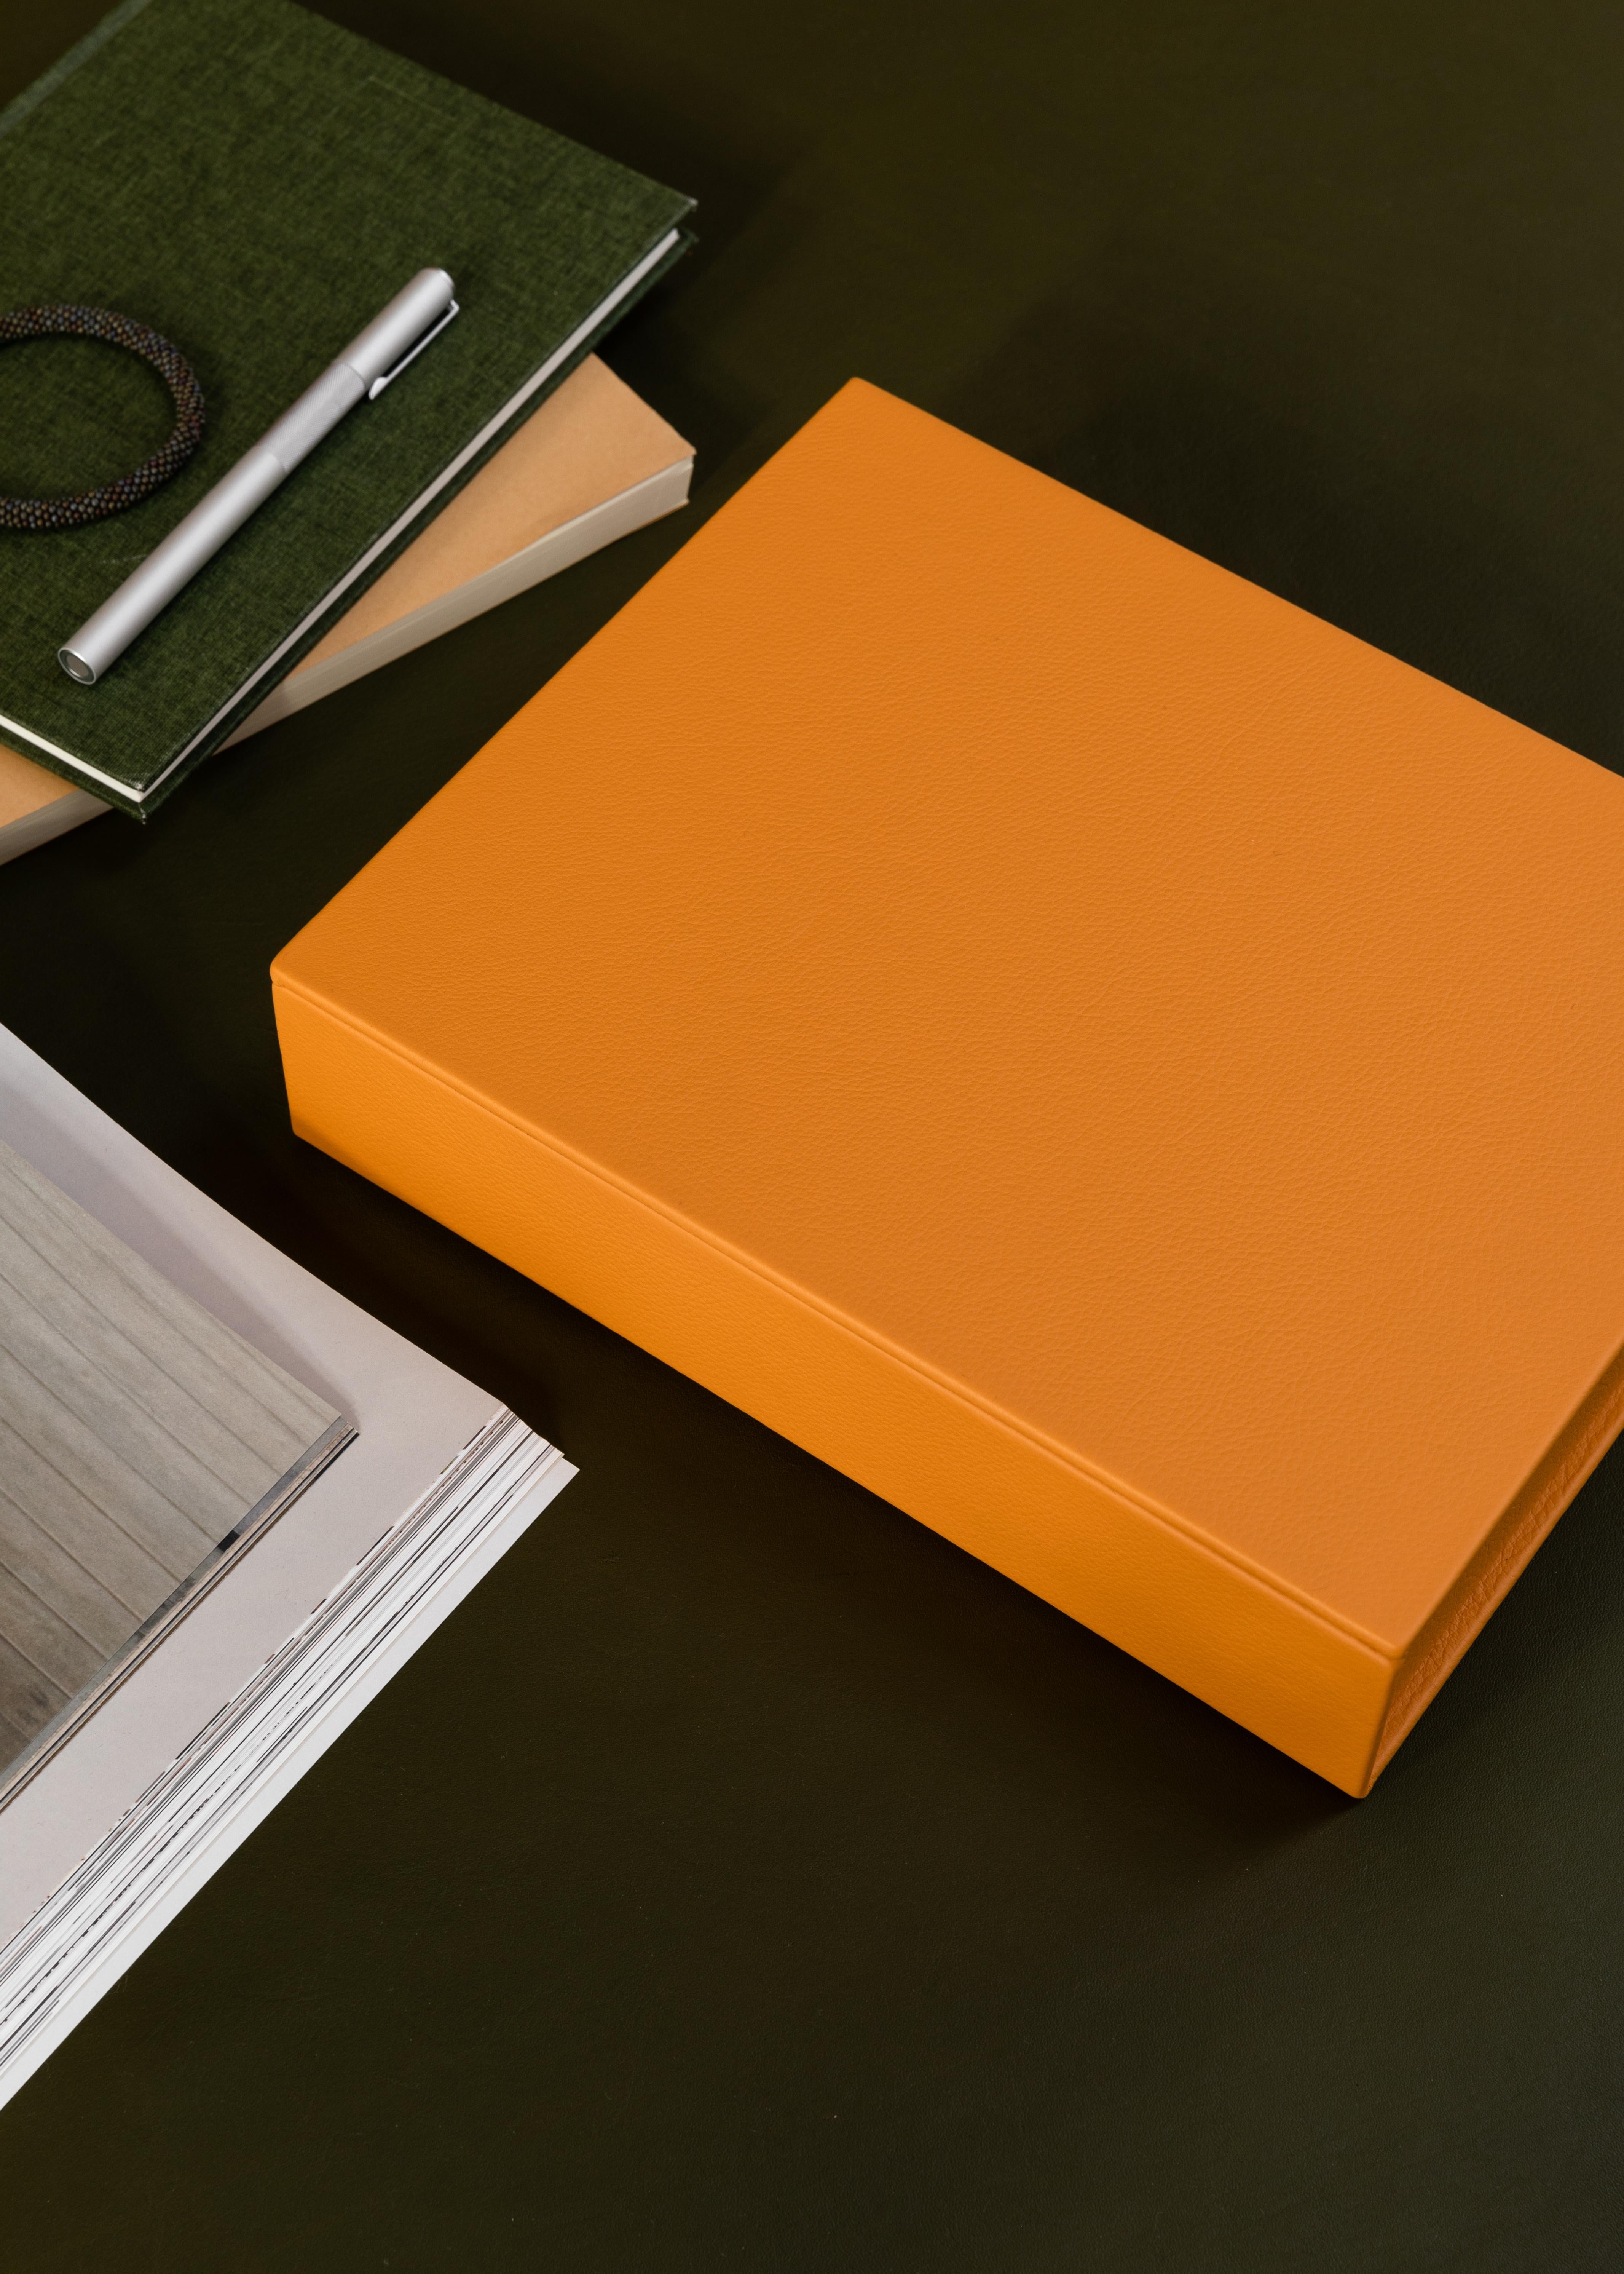 Fabriquée à la main au Portugal à partir de cuir certifié Oekotex, cette Bookbox fait partie de la collection de couleurs d'August Slegs - elle est vibrante, élégante et illumine n'importe quelle pièce tout en gardant en ordre vos effets personnels